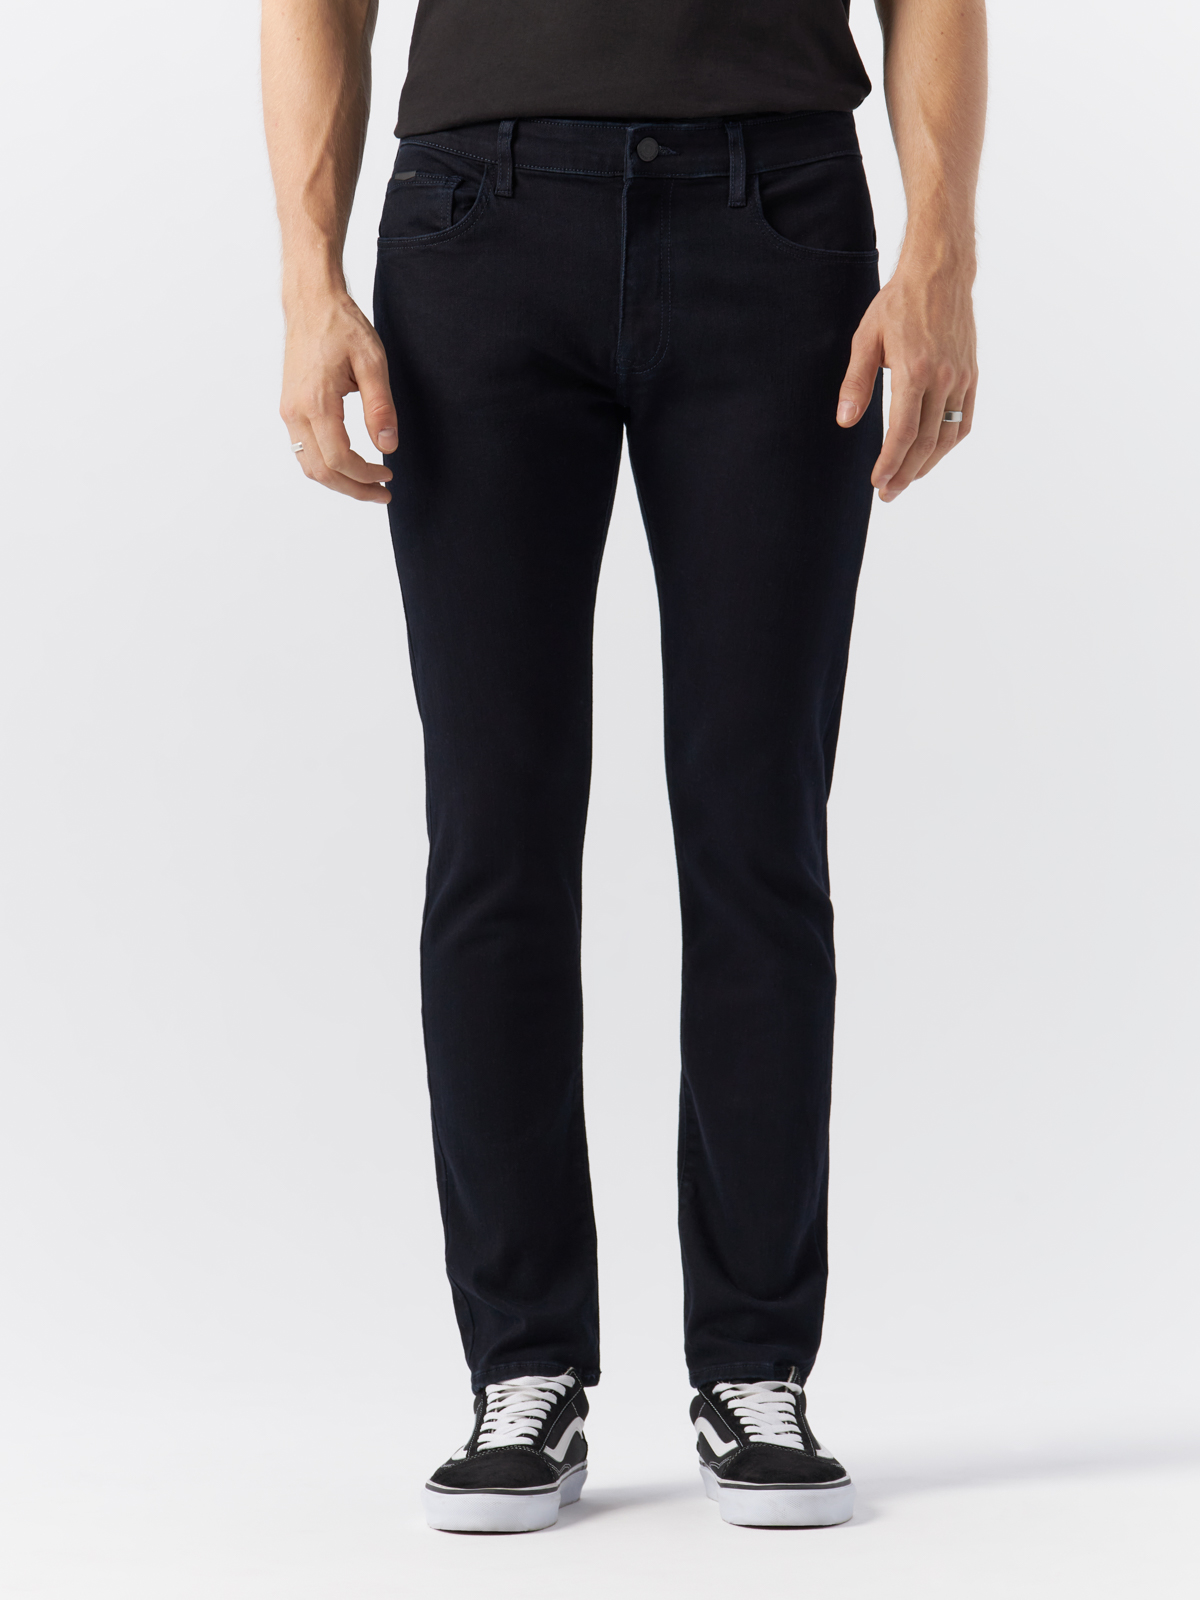 Джинсы Cross Jeans для мужчин, E 185-169, размер 36-30, чёрные